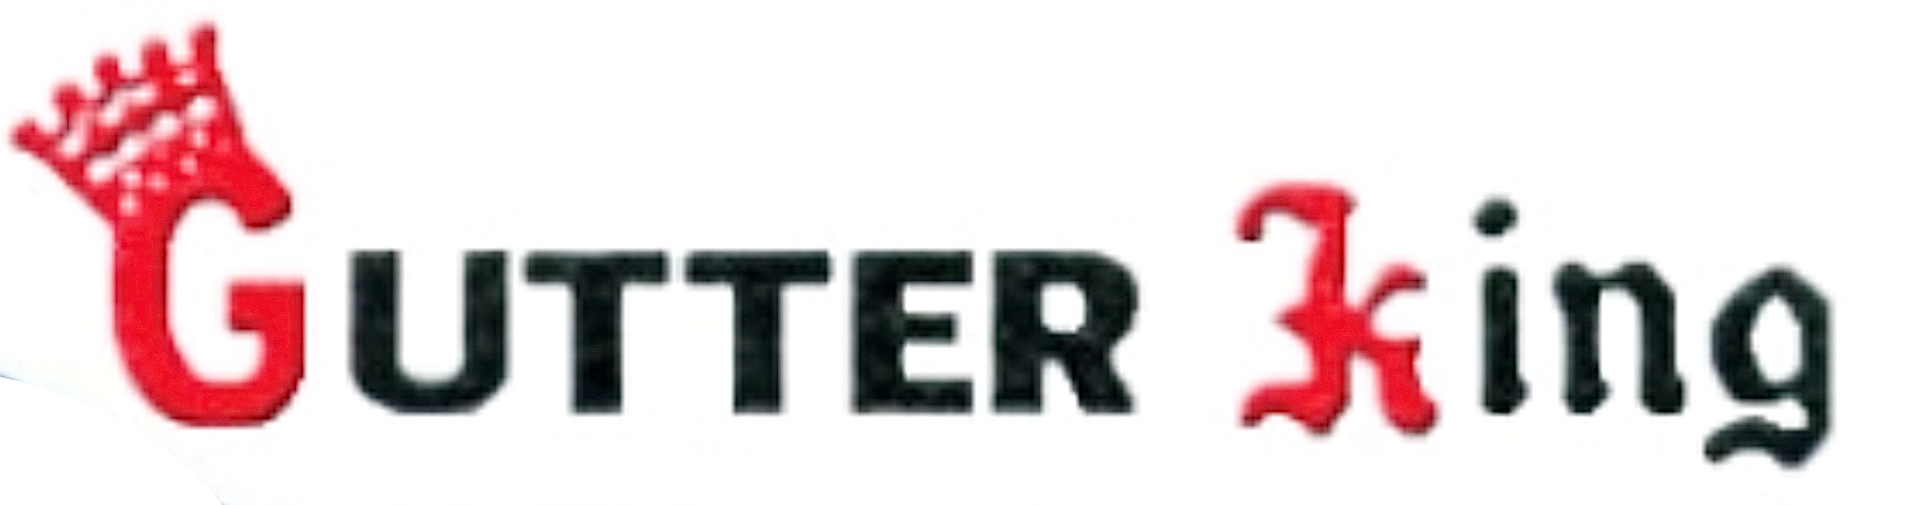 Gutter king logo